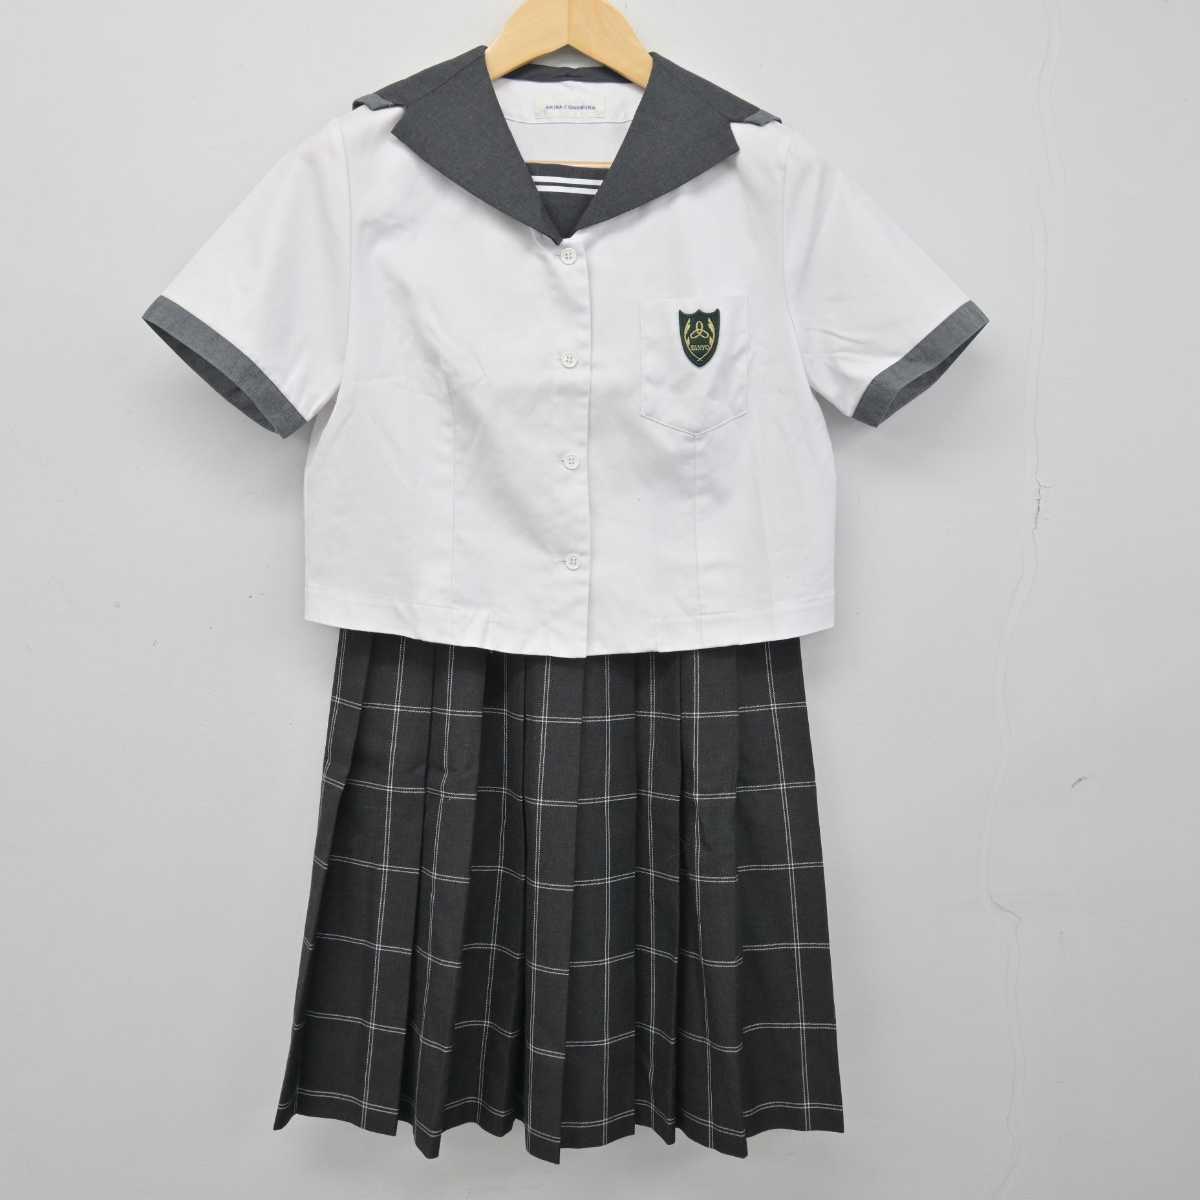 岡山県 山陽女子/山陽学園 制服 セット - コスプレ衣装